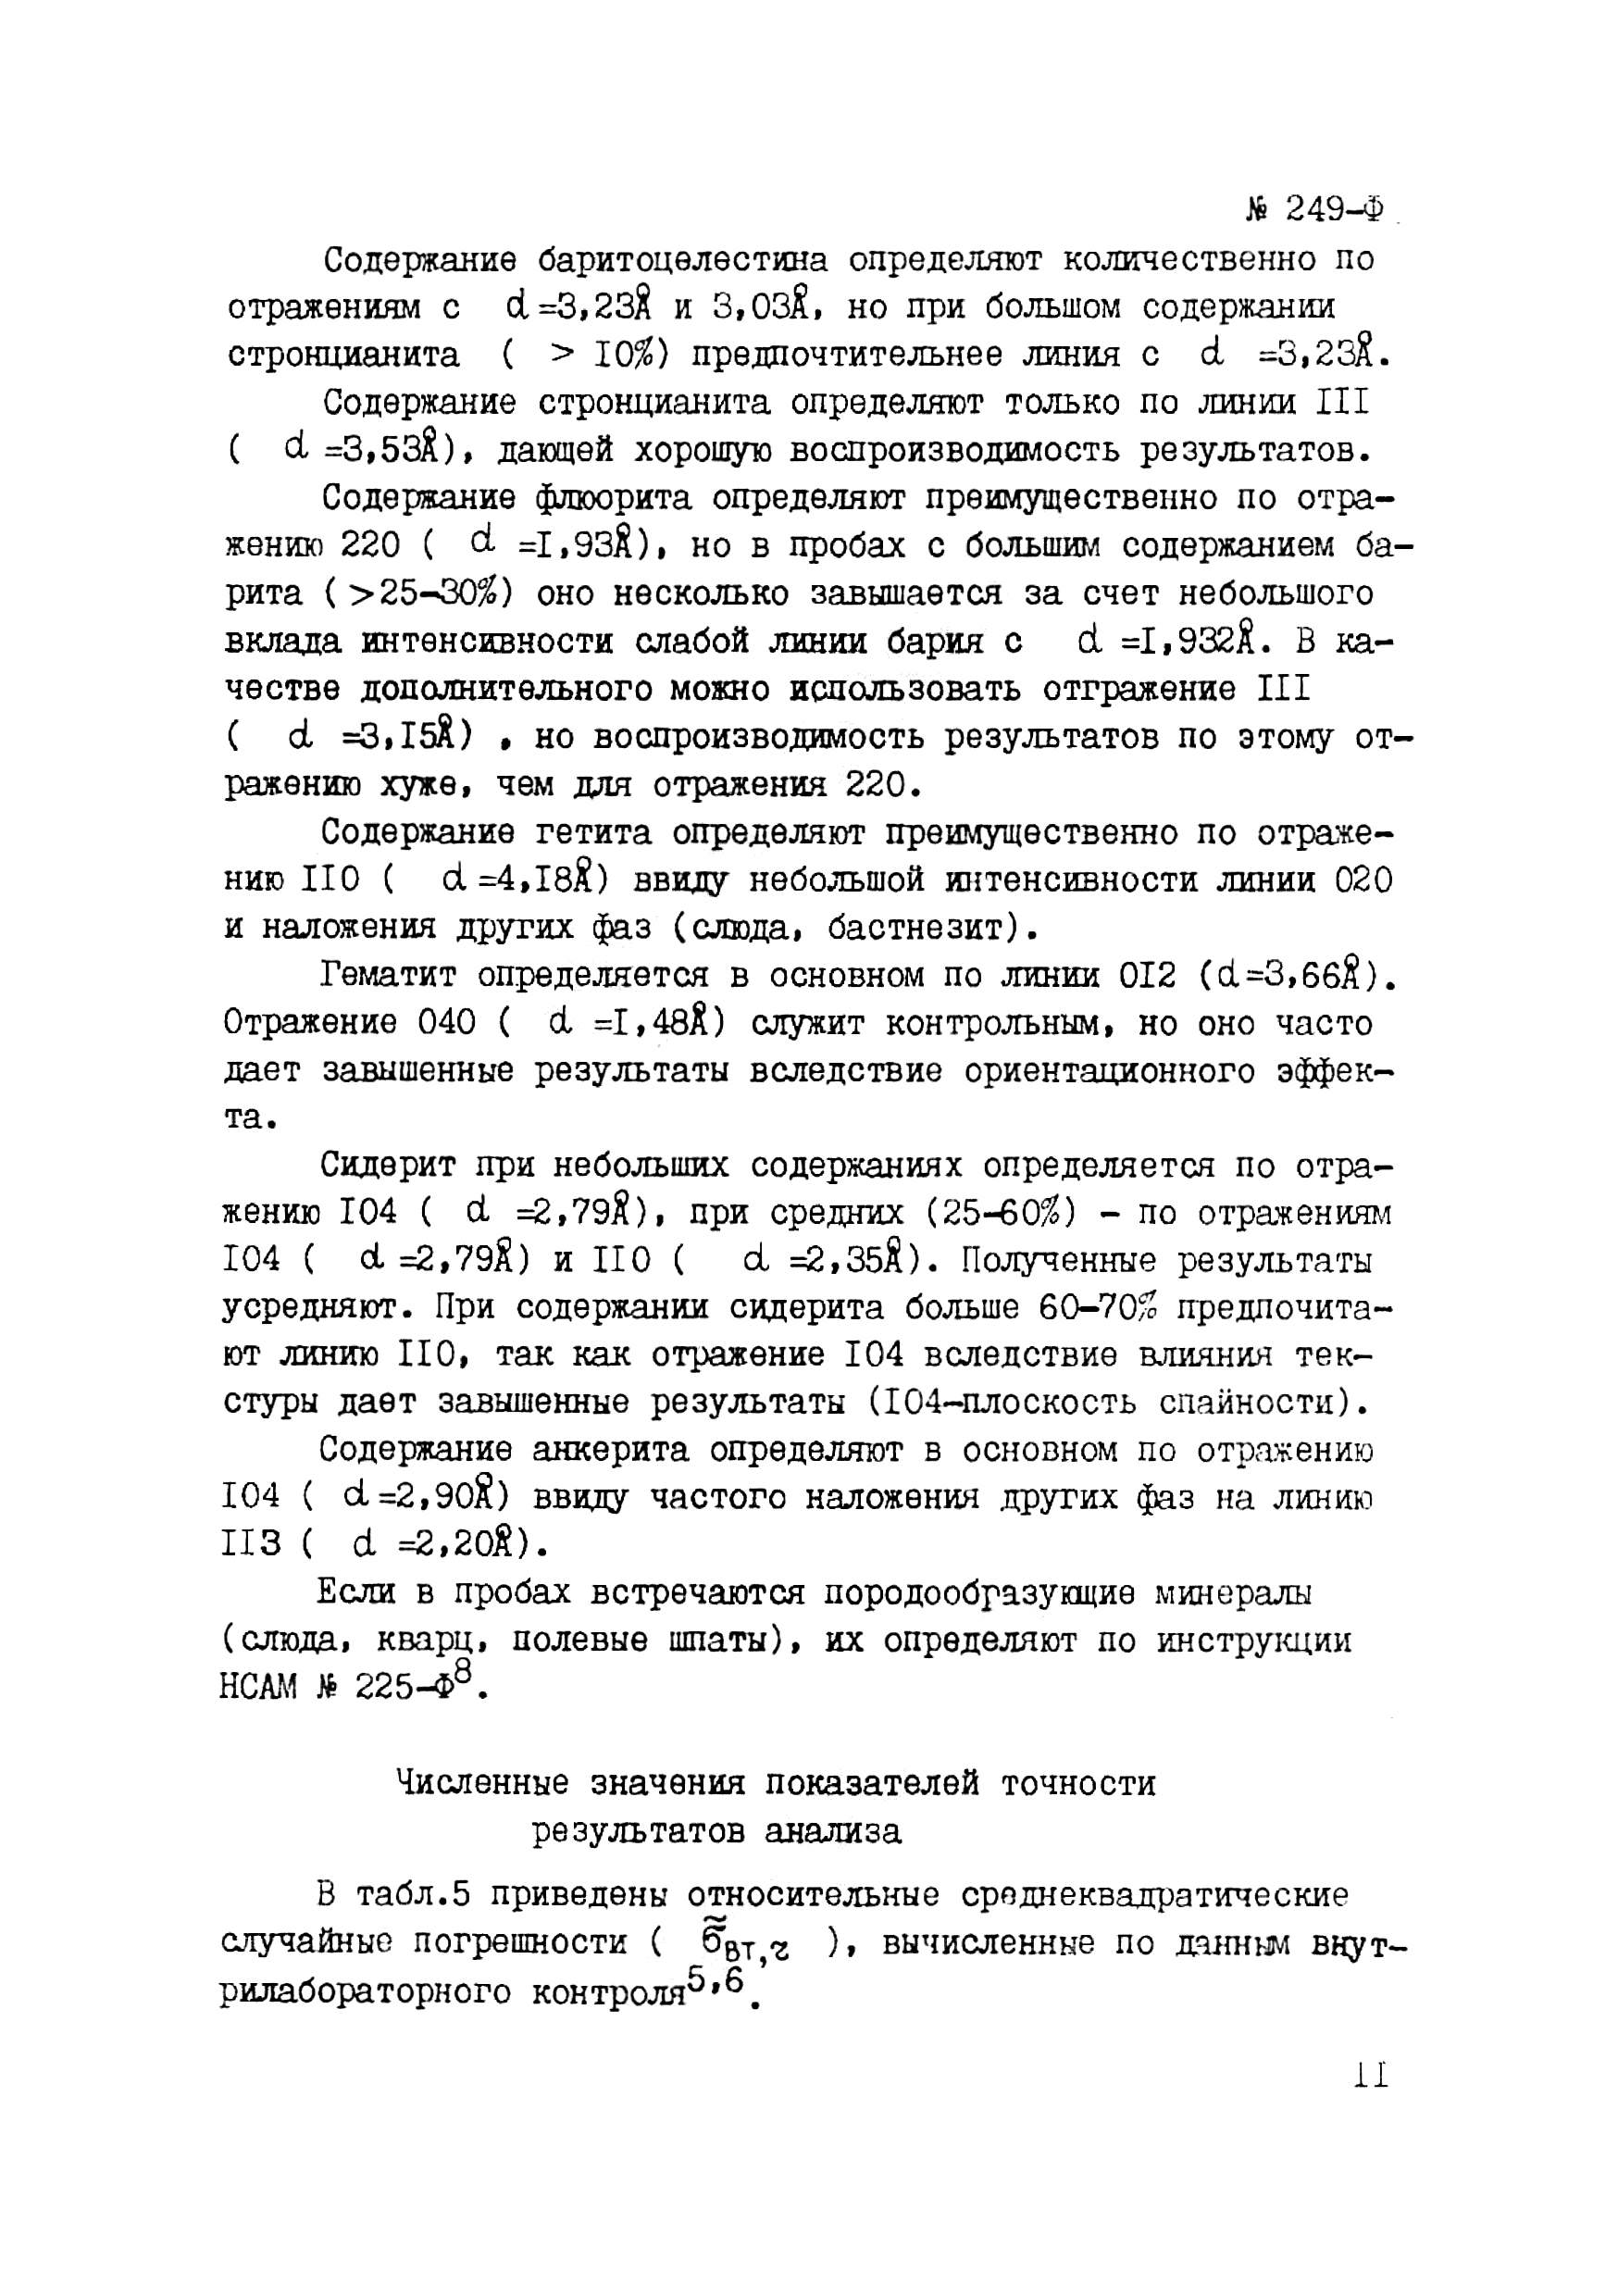 Инструкция НСАМ 249-Ф